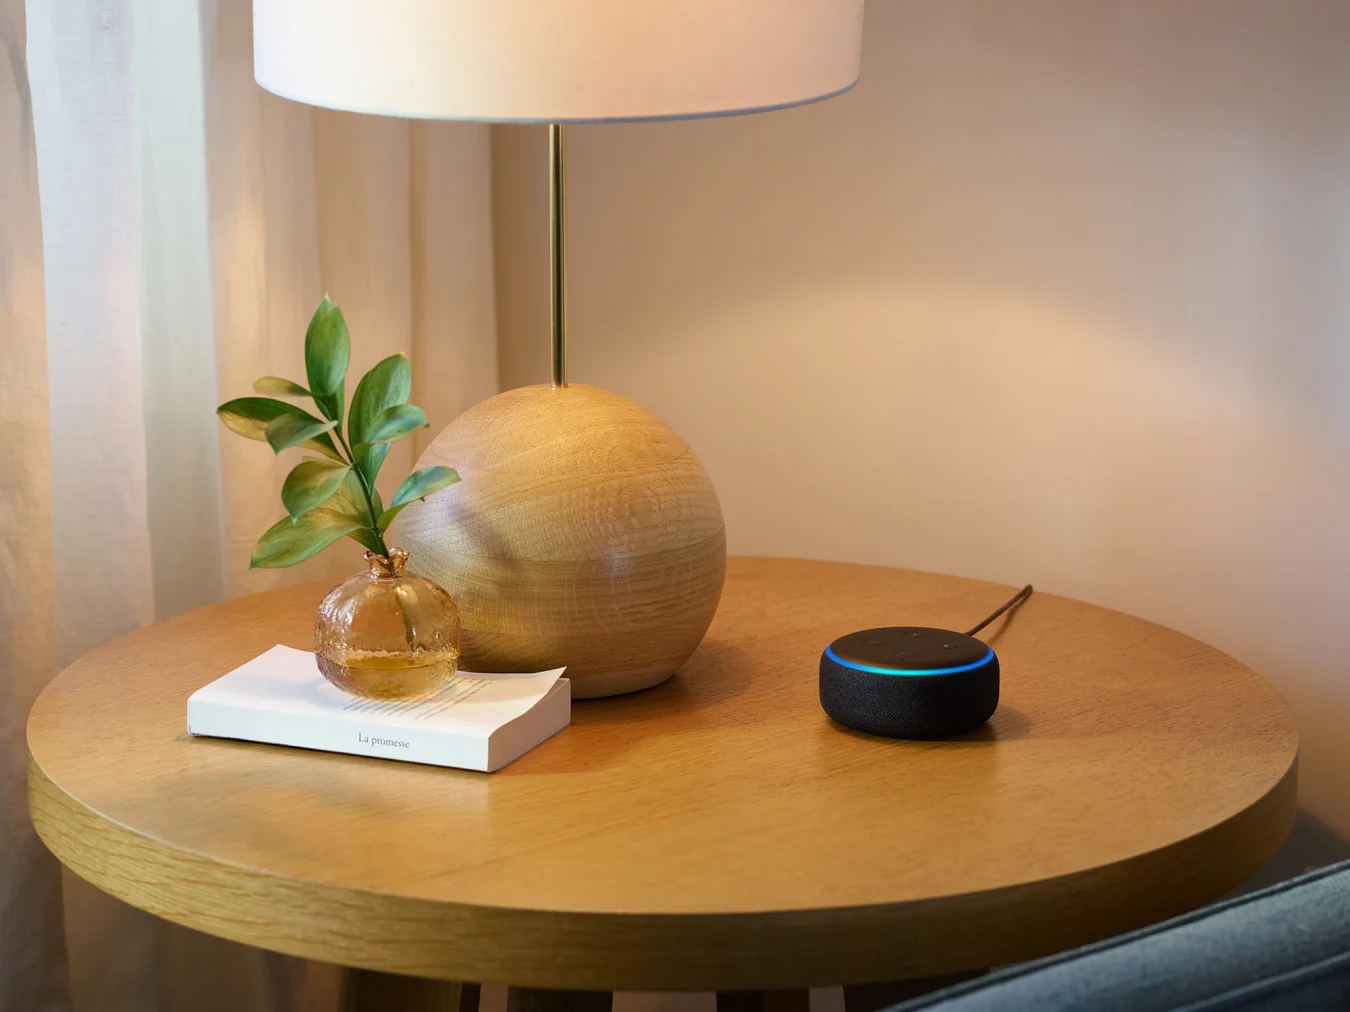 Amazon Echo Dot smart speaker